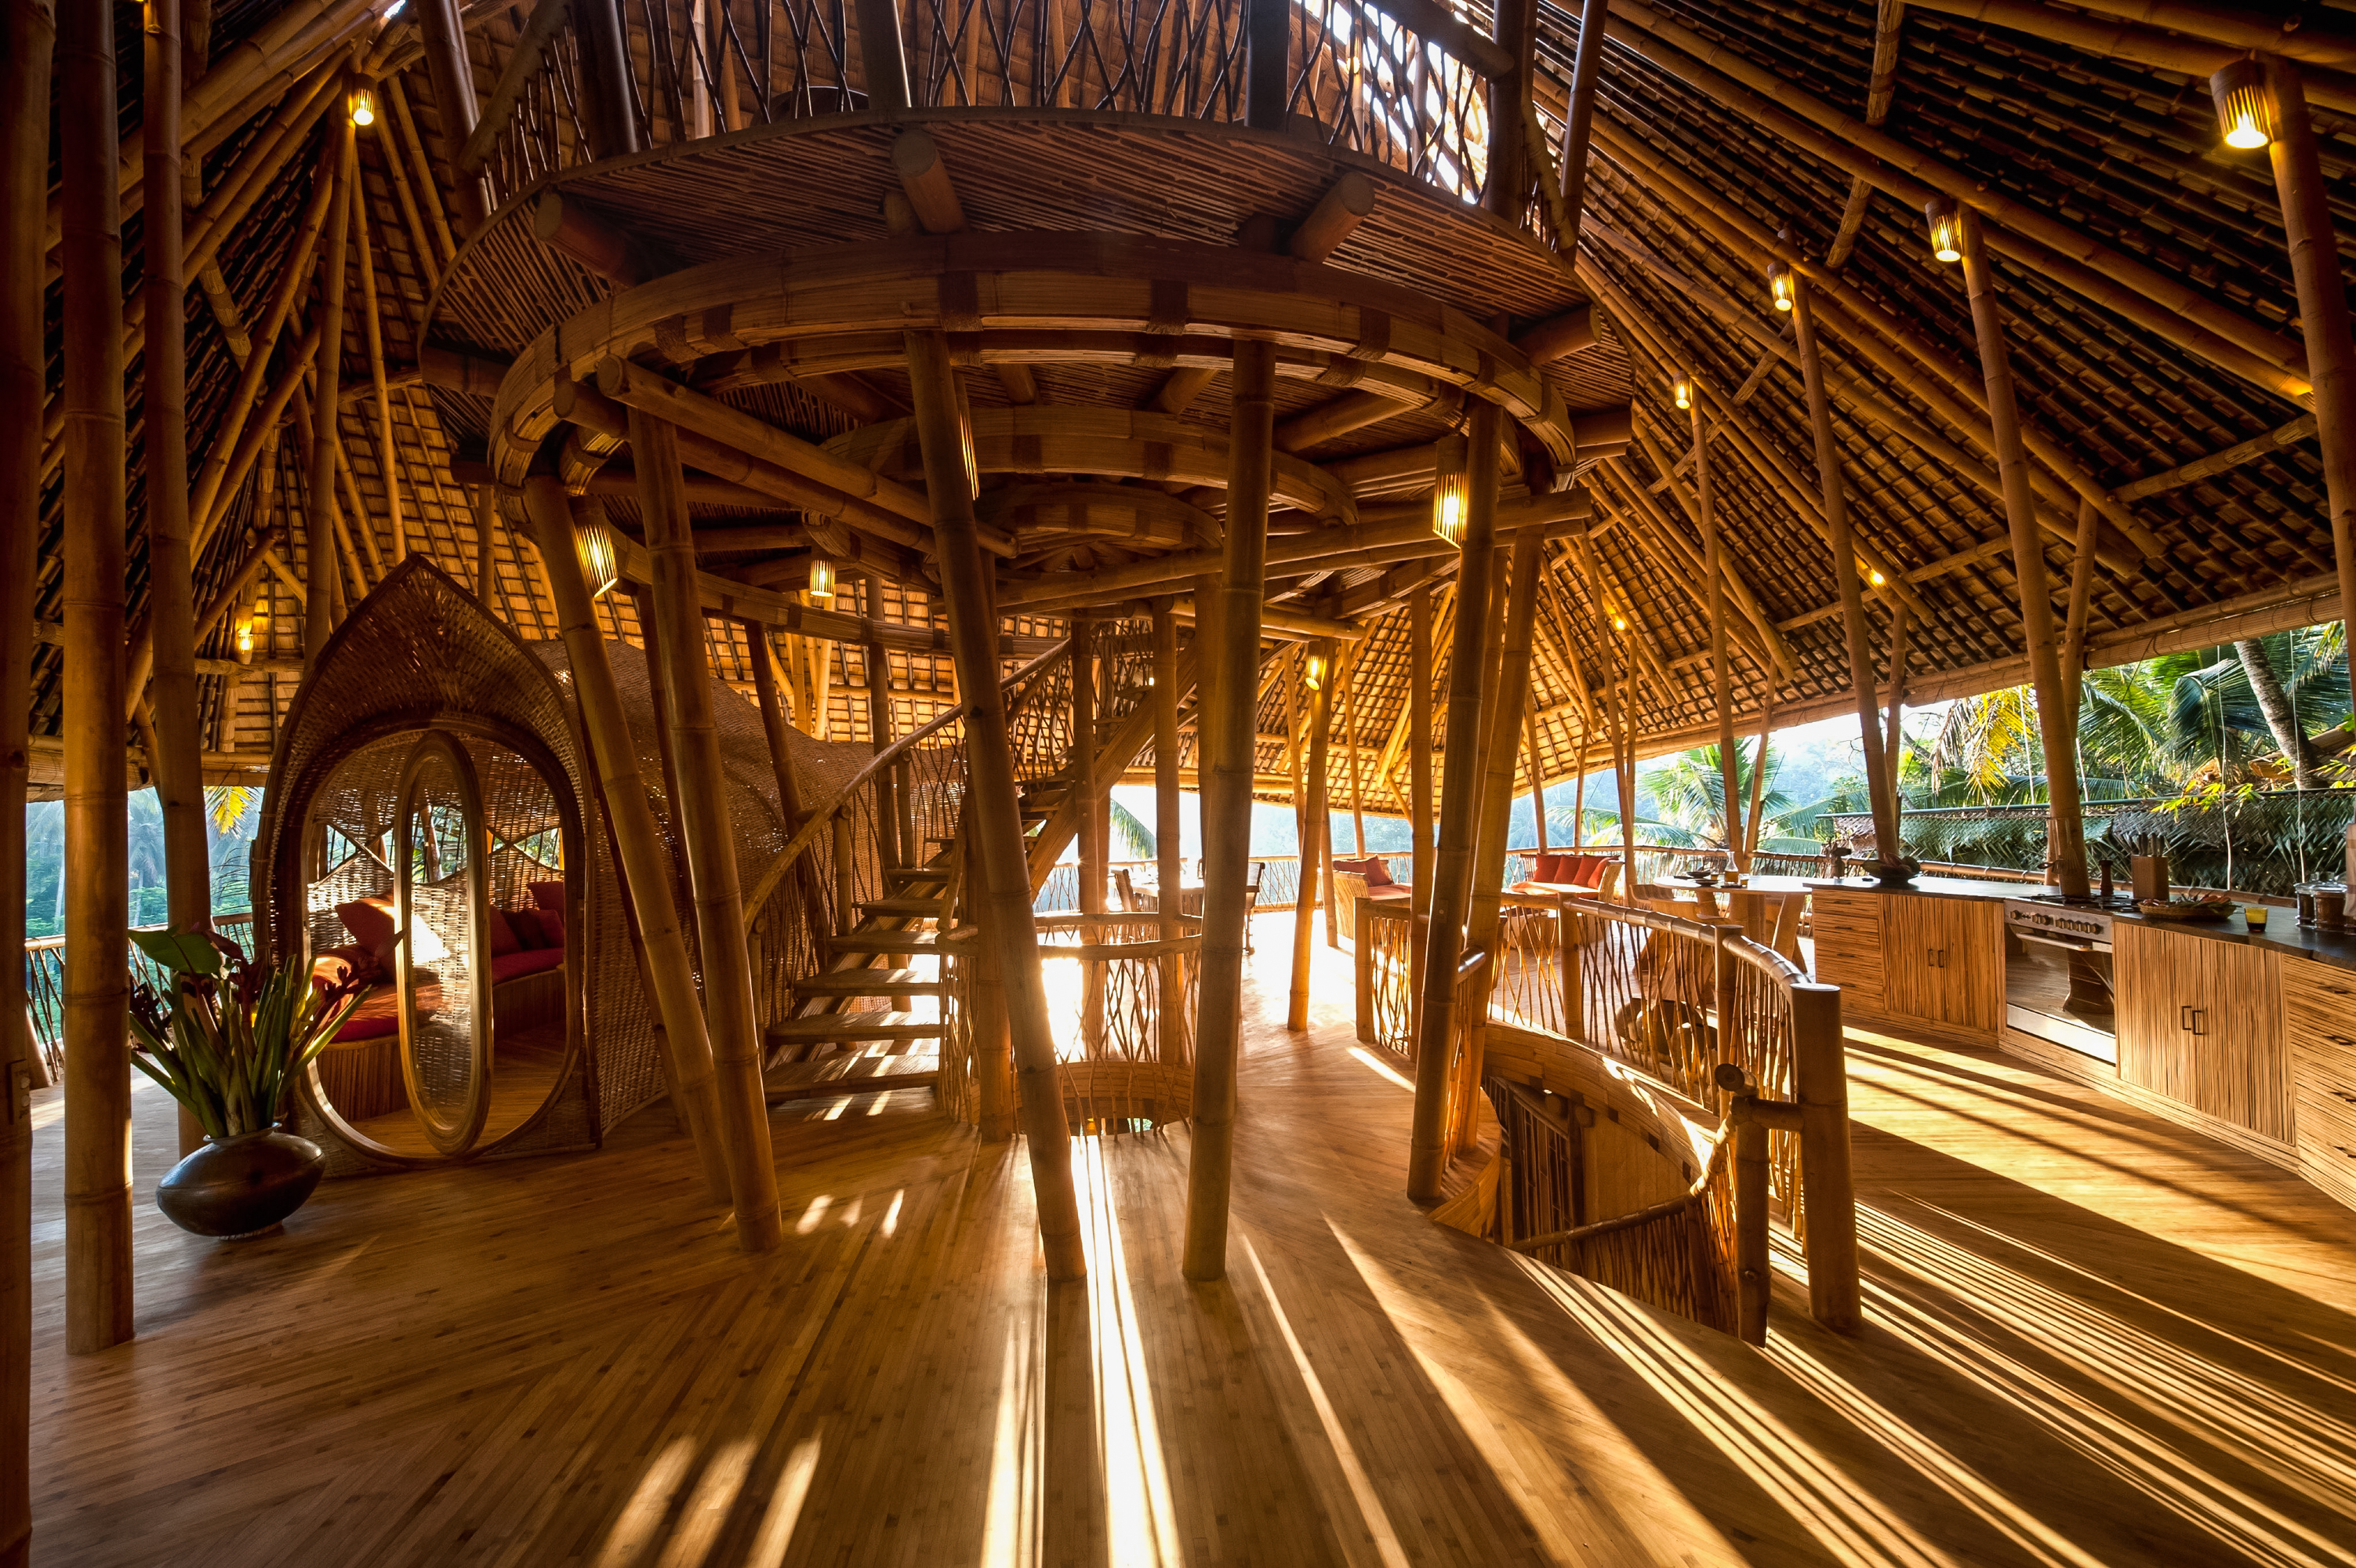 Foto Rumah Bambu